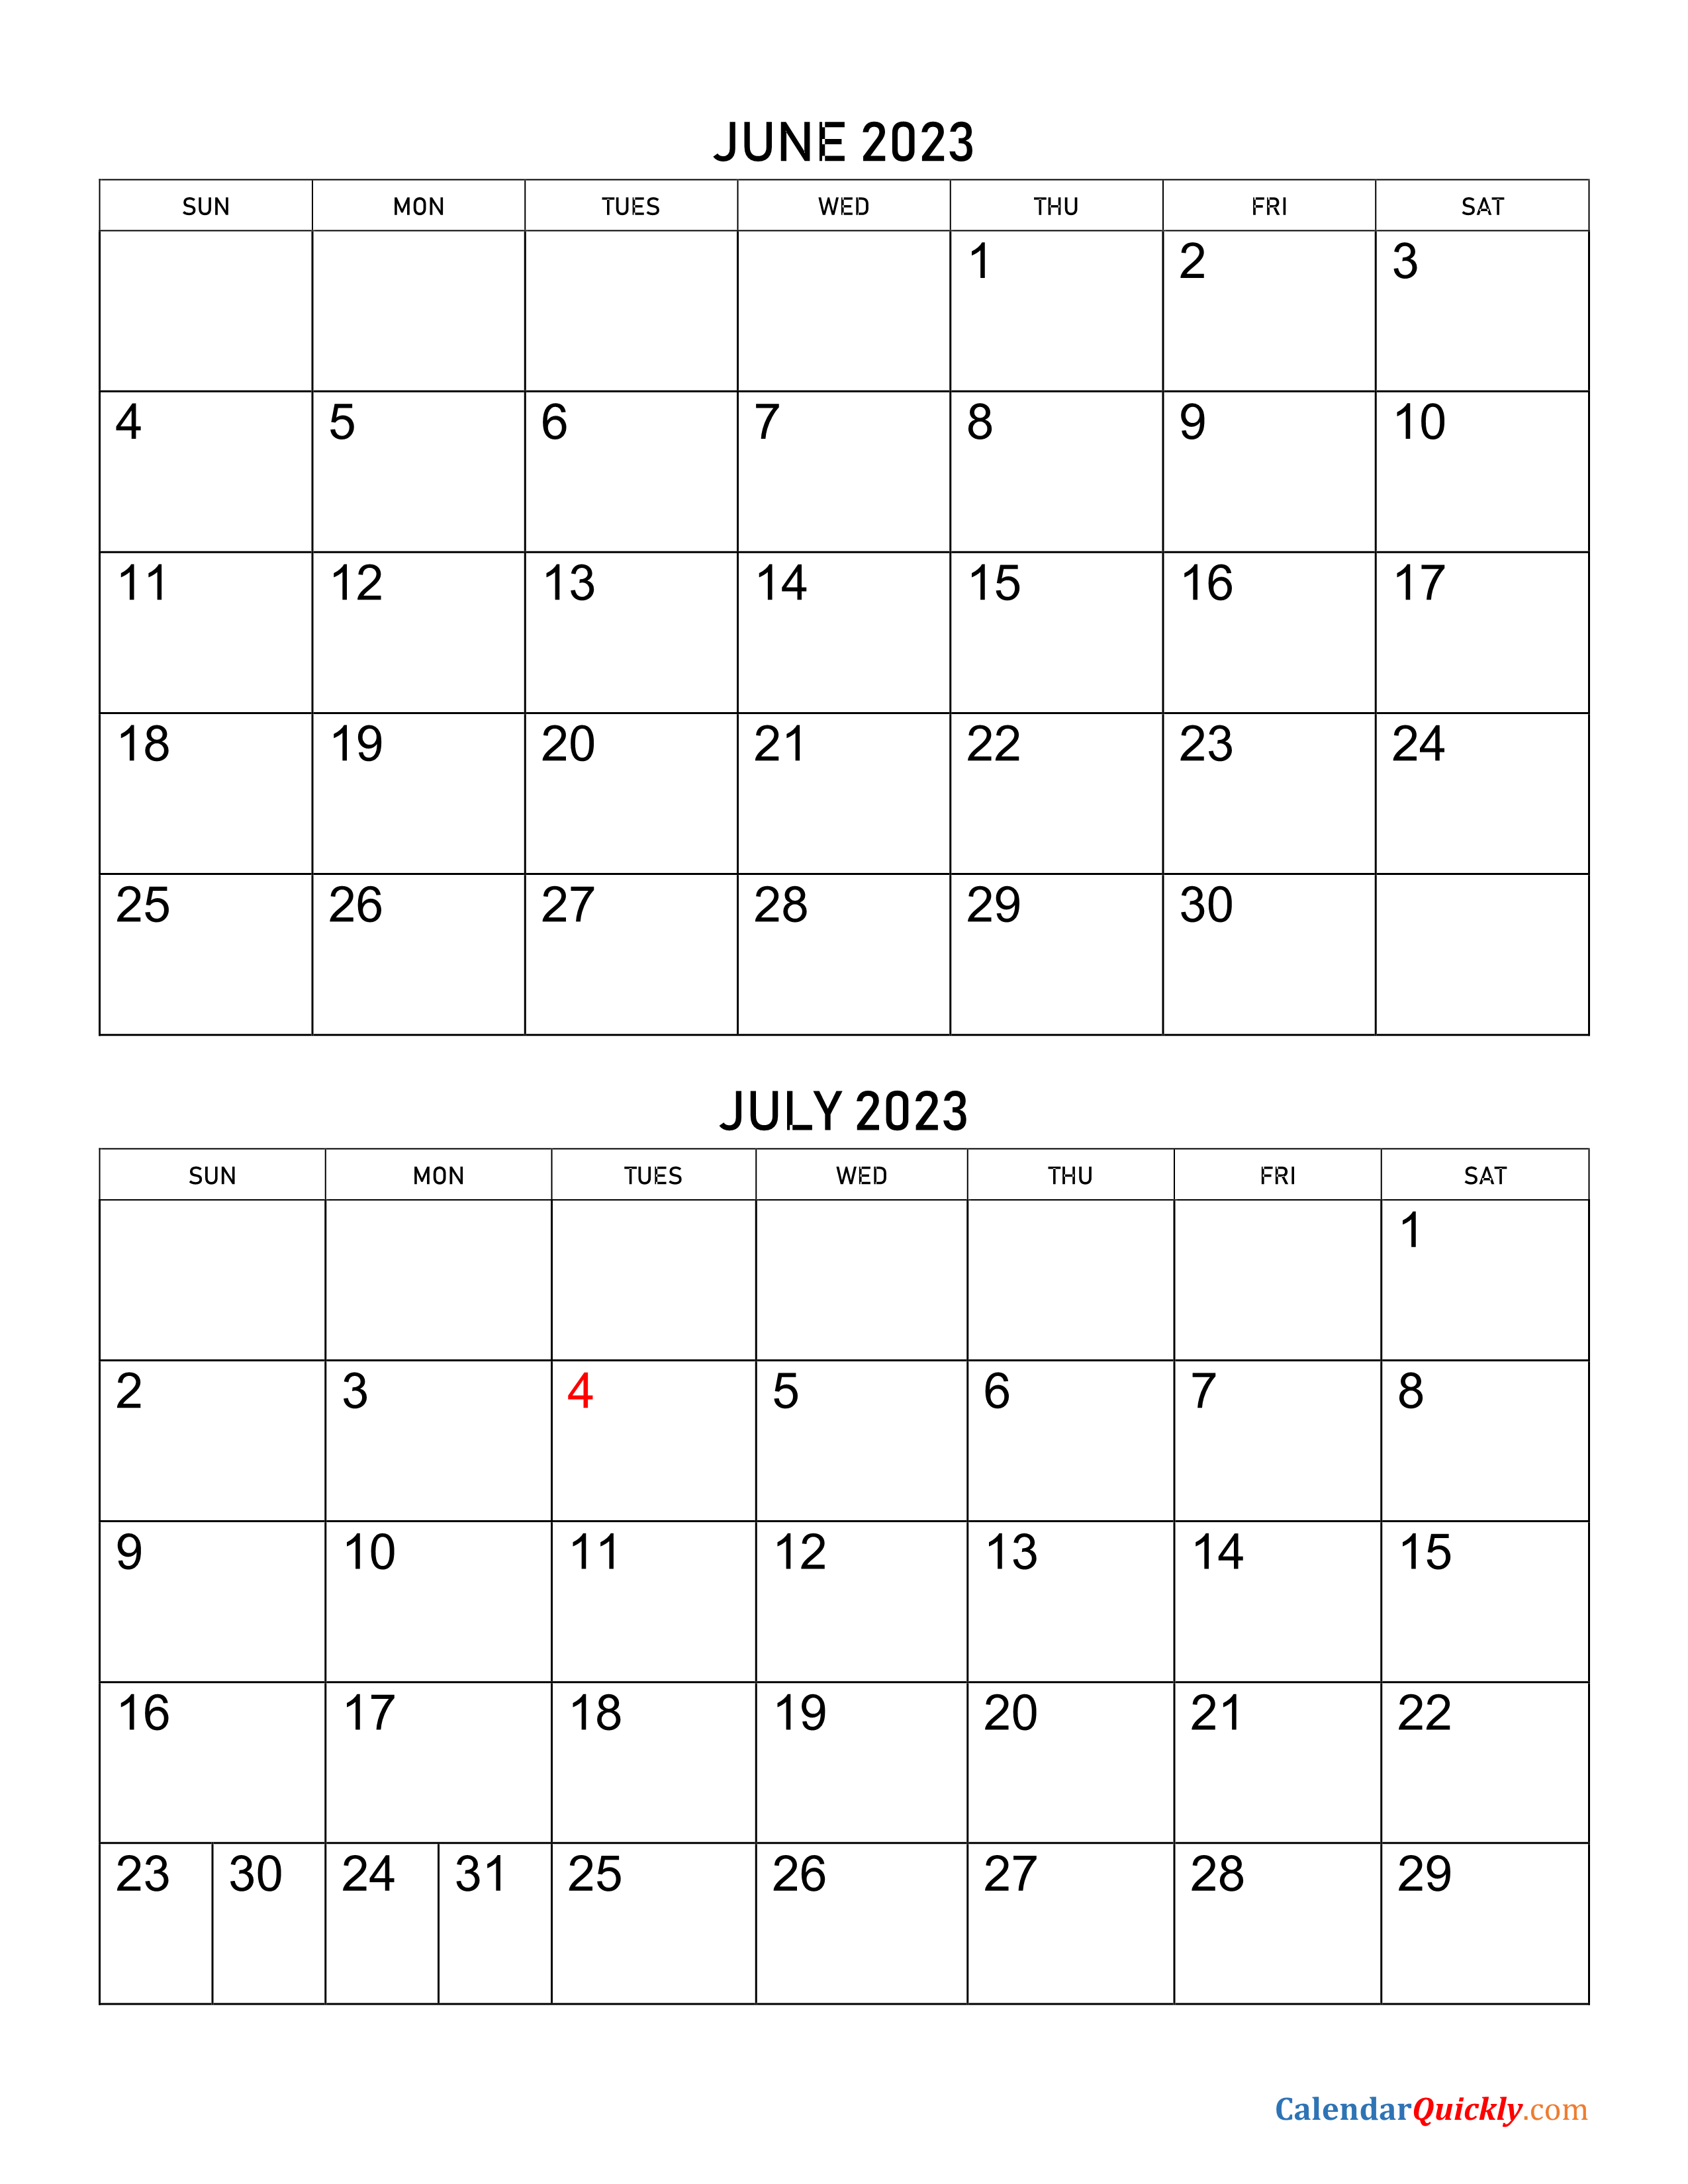 June July 2023 Calendar 2023 Calendar